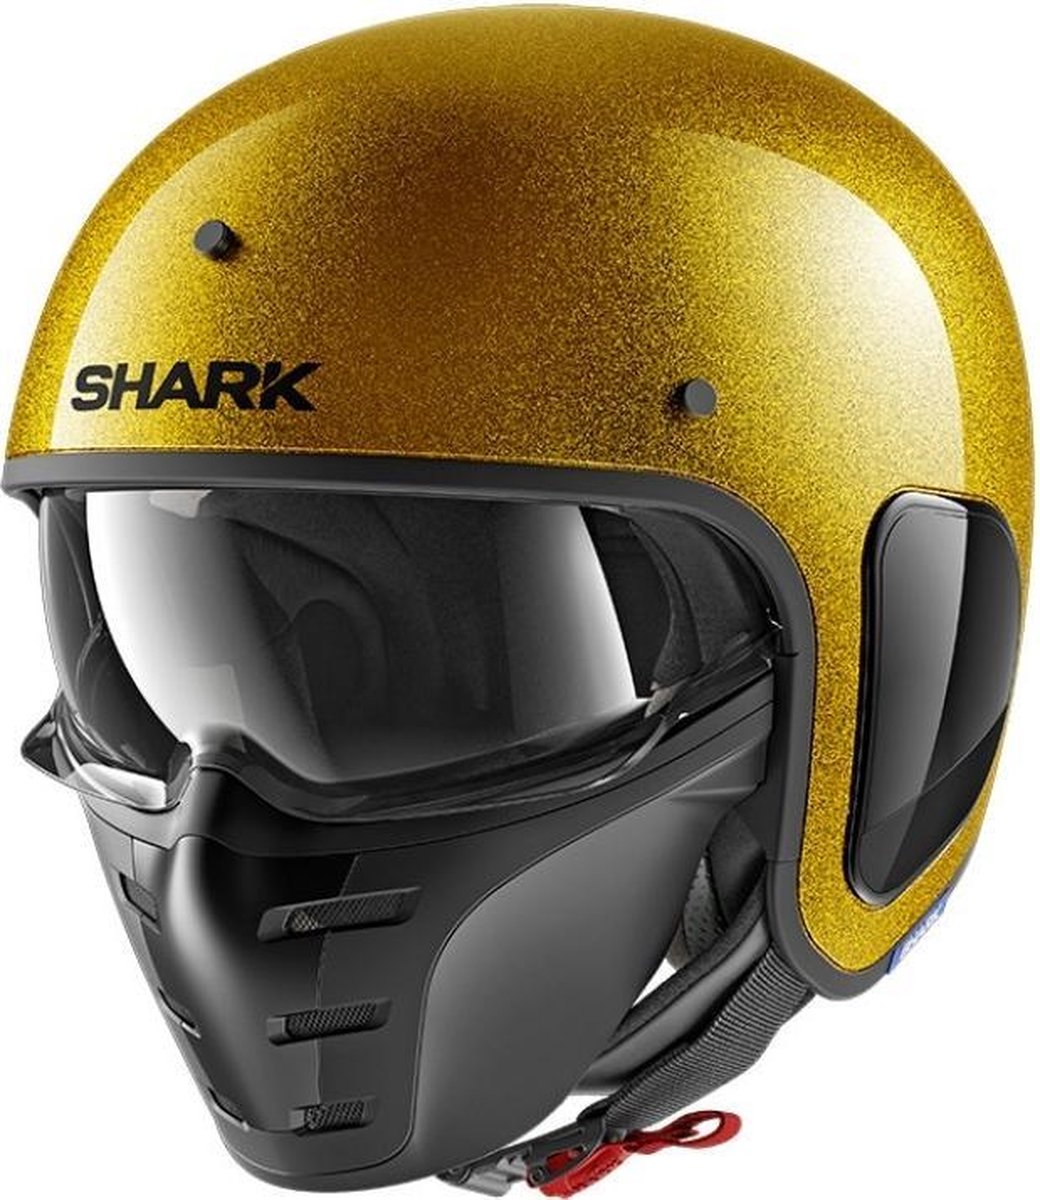 Shark S-Drak Blank Glitter Goud Jethelm - Motorhelm - Maat S